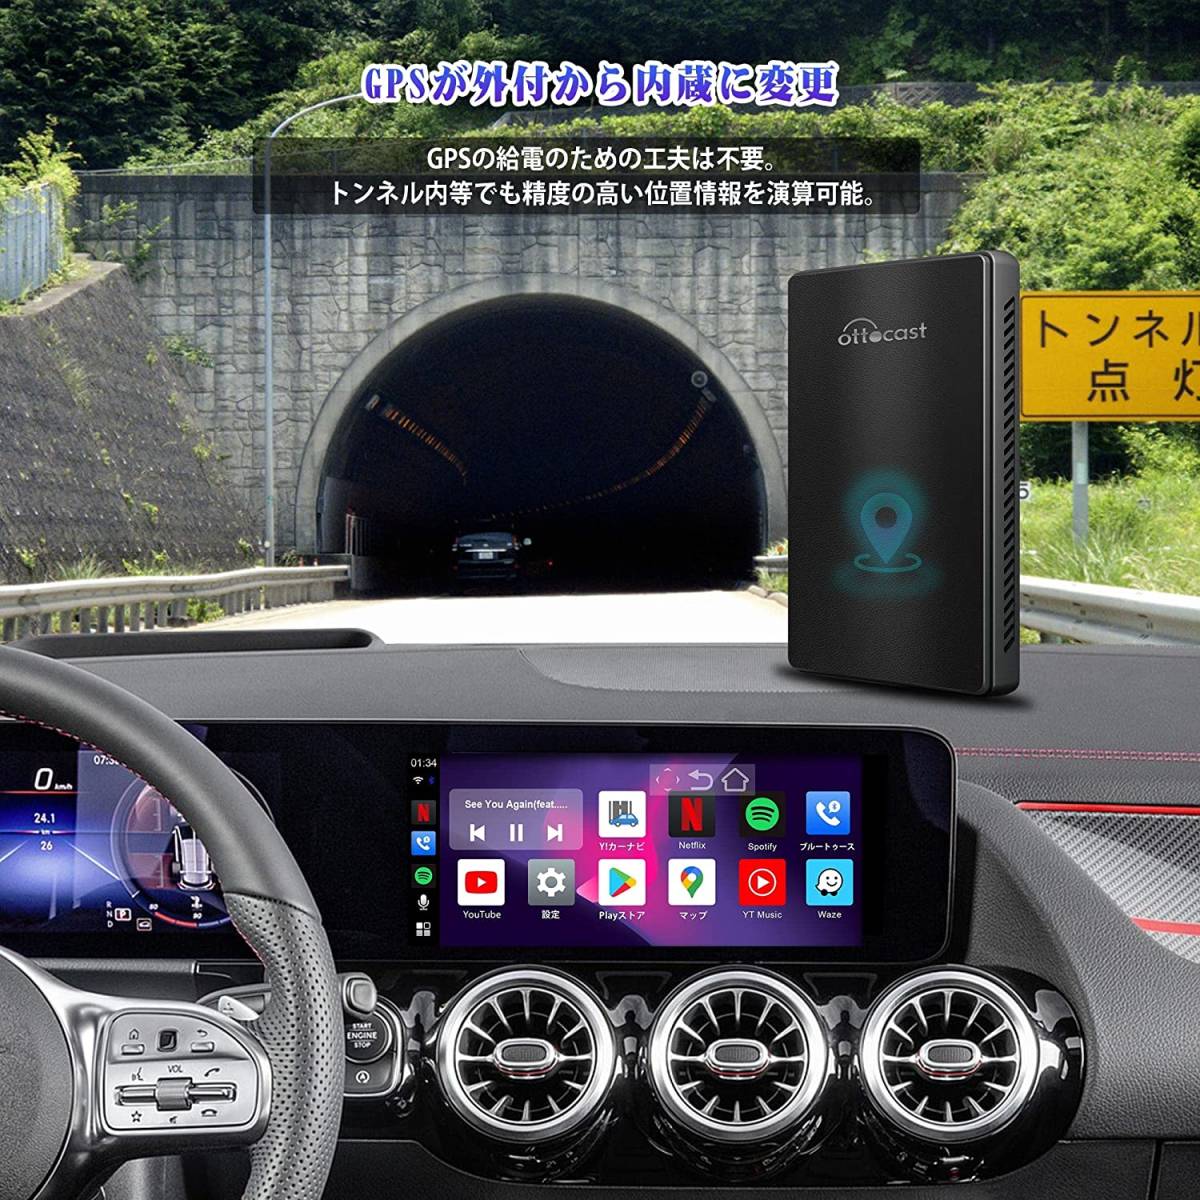 OTTOCAST CarPlay AI Box　CarPlayとAndroid Autoがワイヤレスで使用可能 GPS内蔵型ストレージ64Gの新型オットキャスト